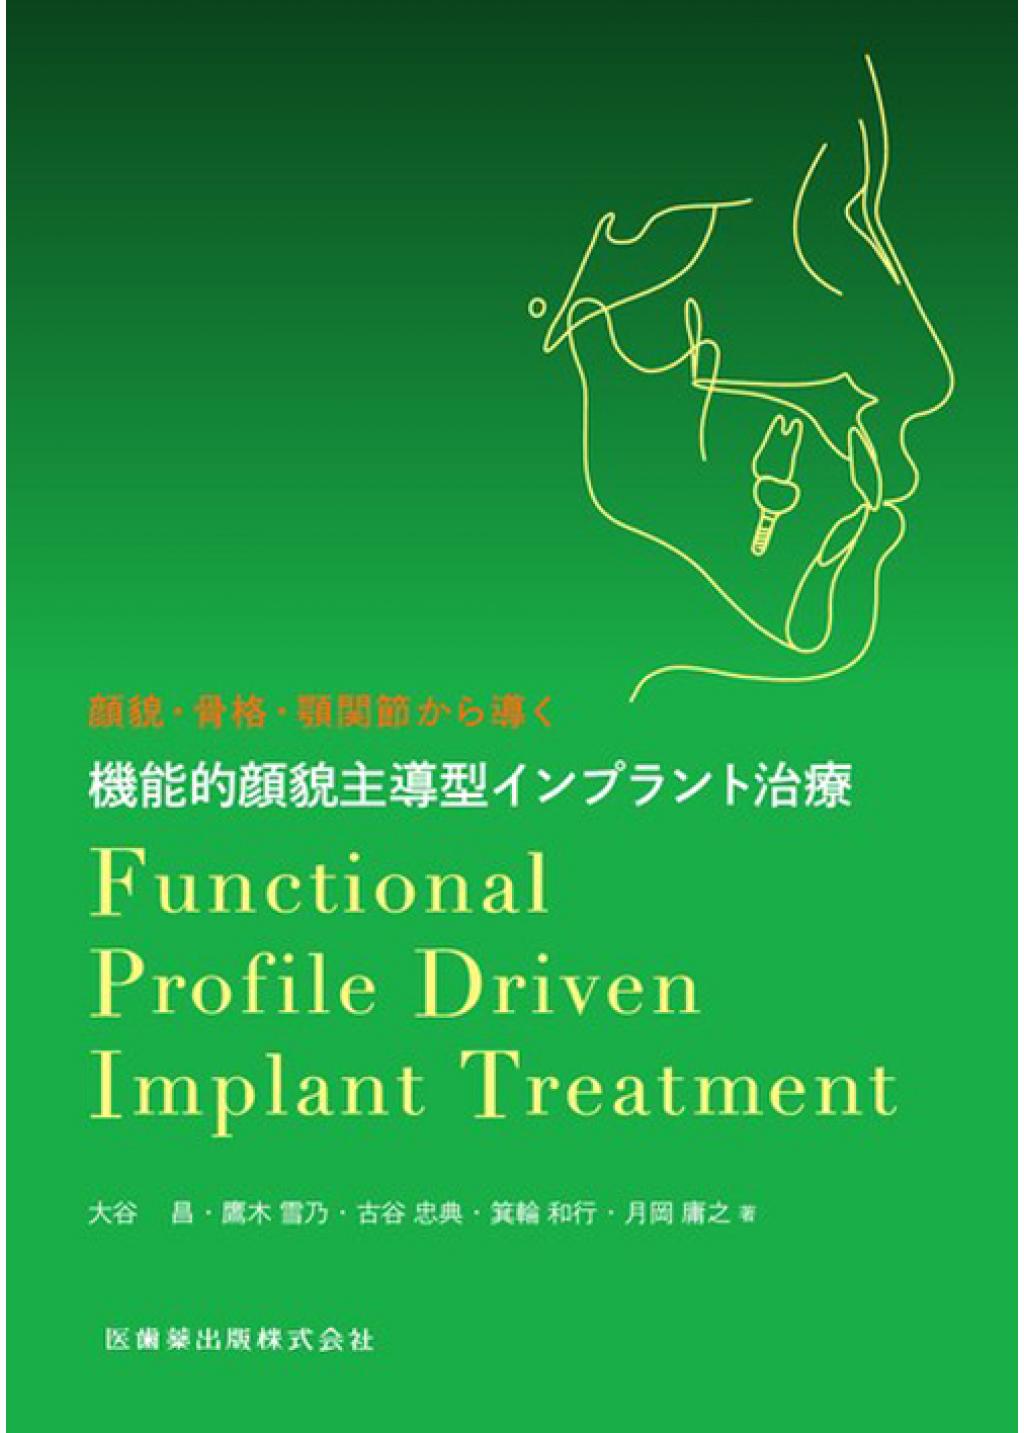 顔貌・骨格・顎関節から導く 機能的顔貌主導型インプラント治療の購入 